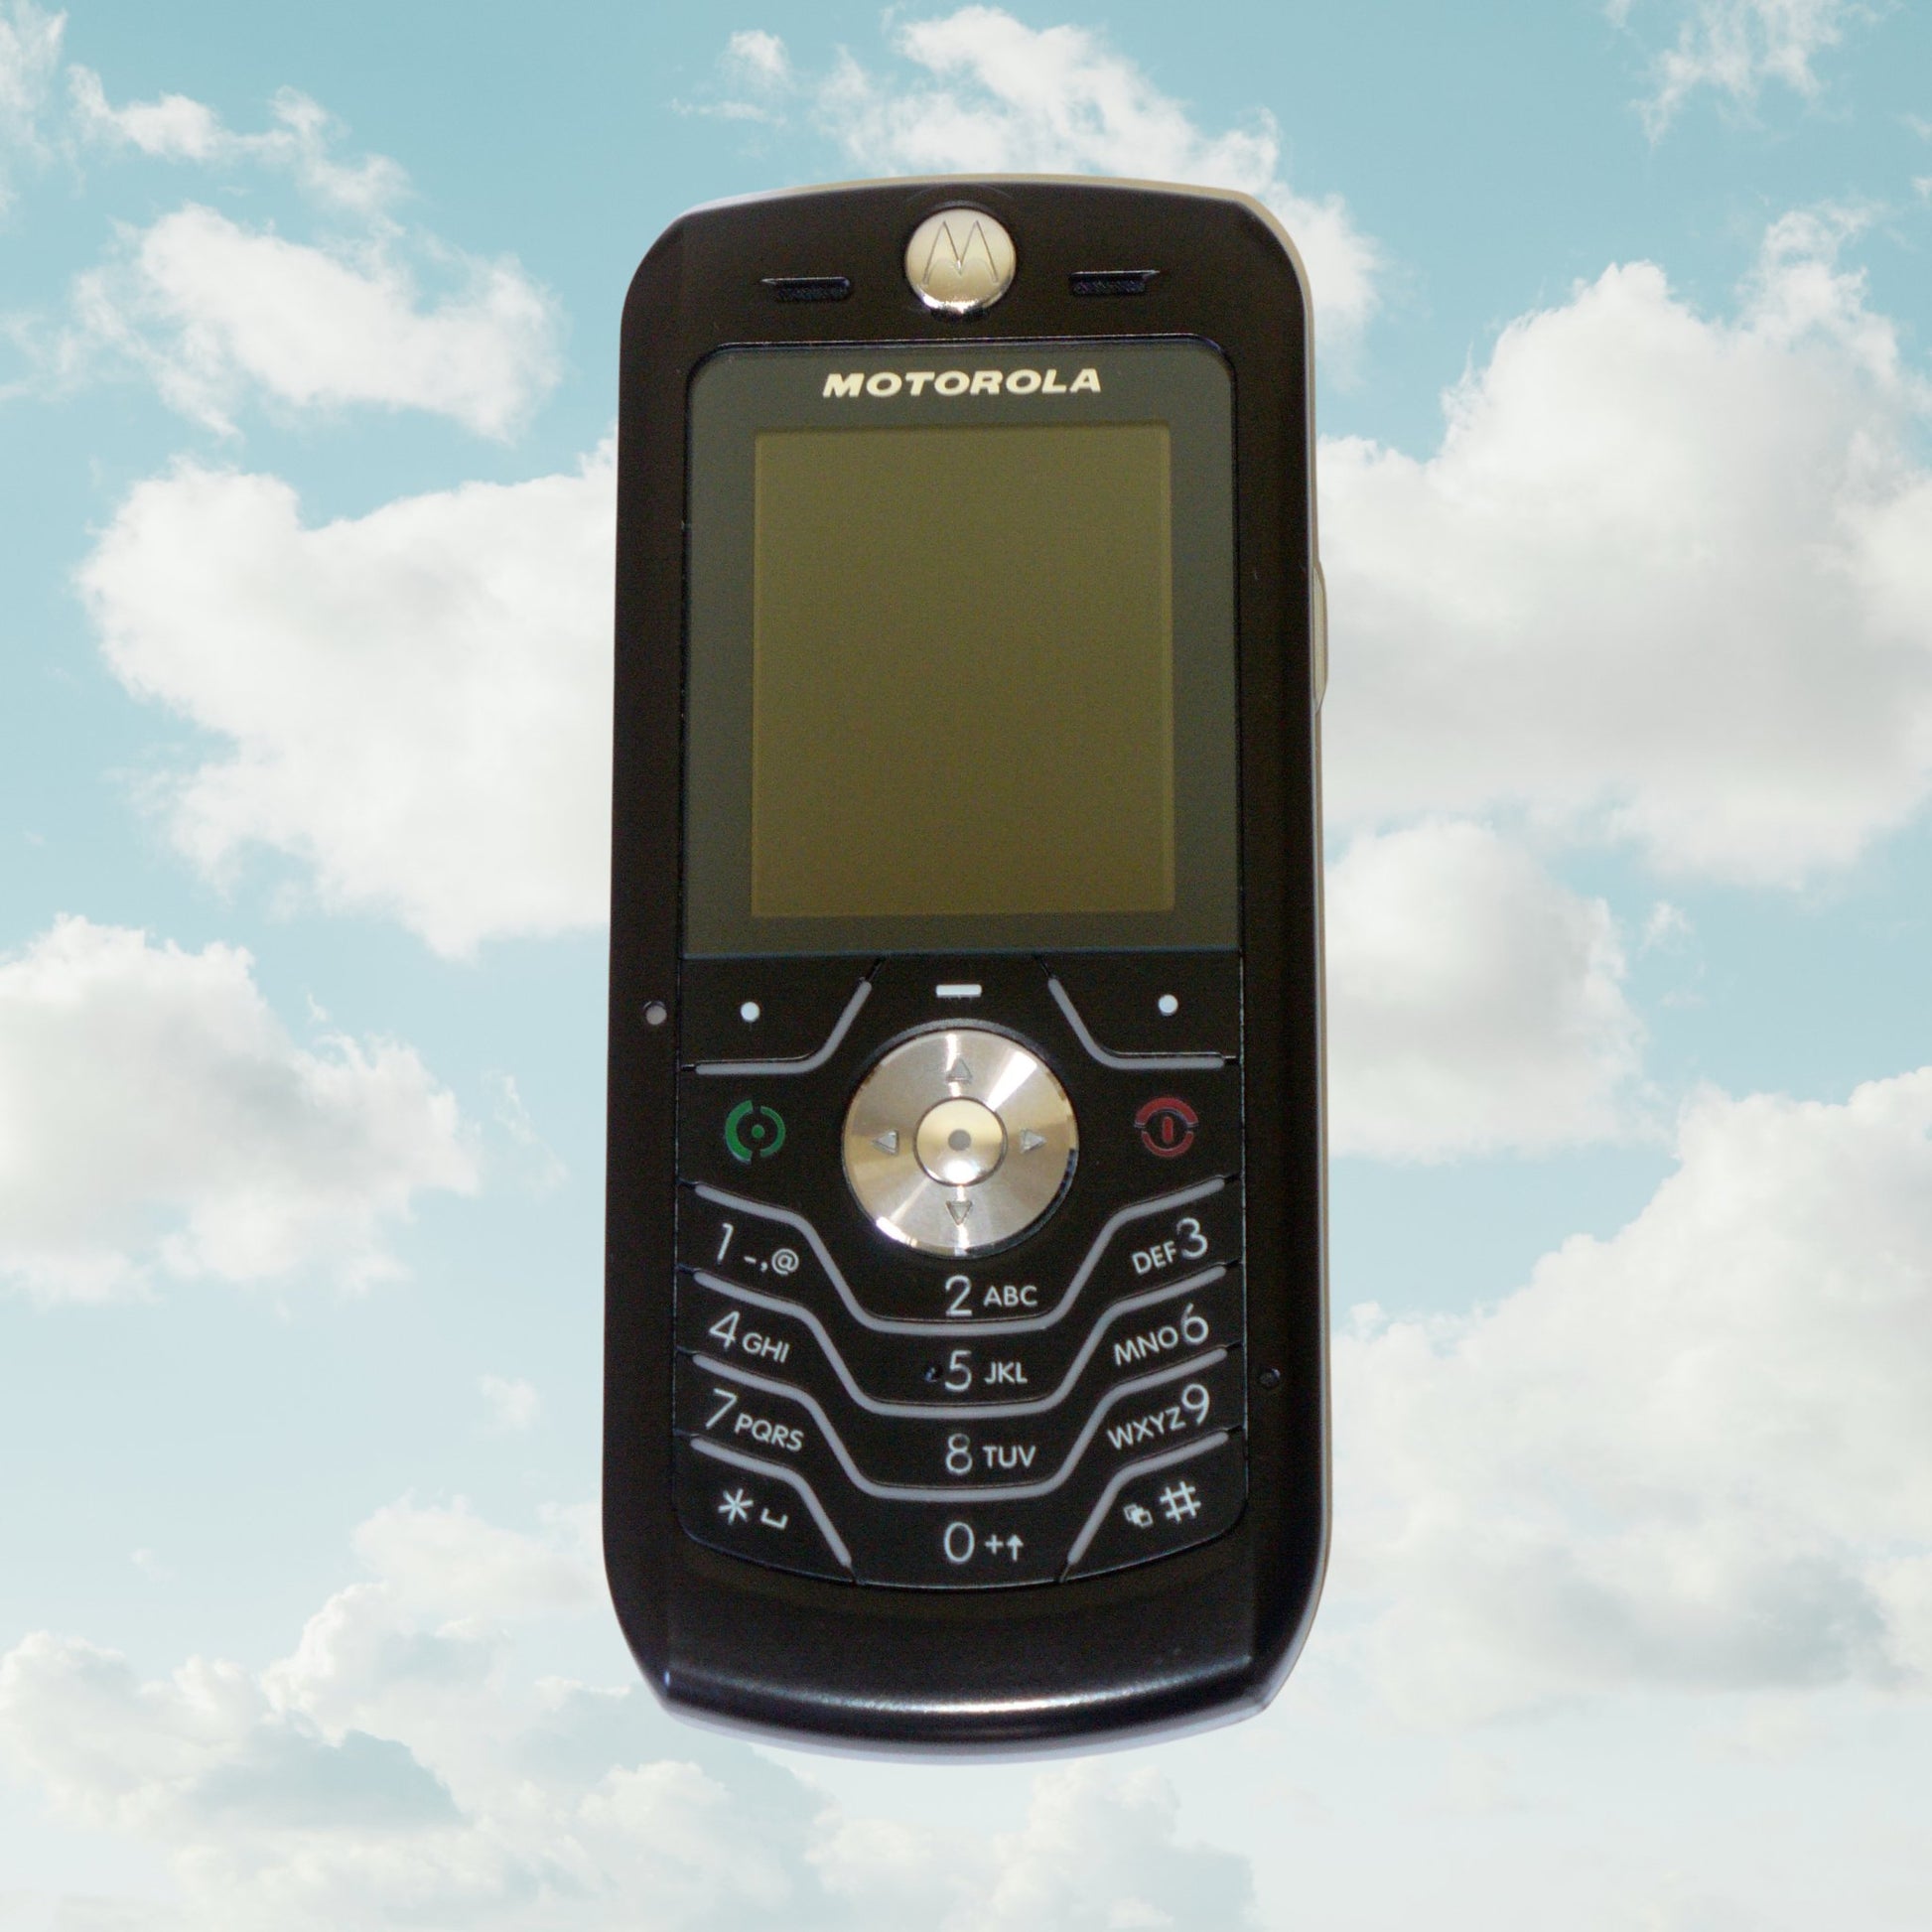 Motorola L6 - Unlocked - Vintage Mobile Phone - Y2K PHONES